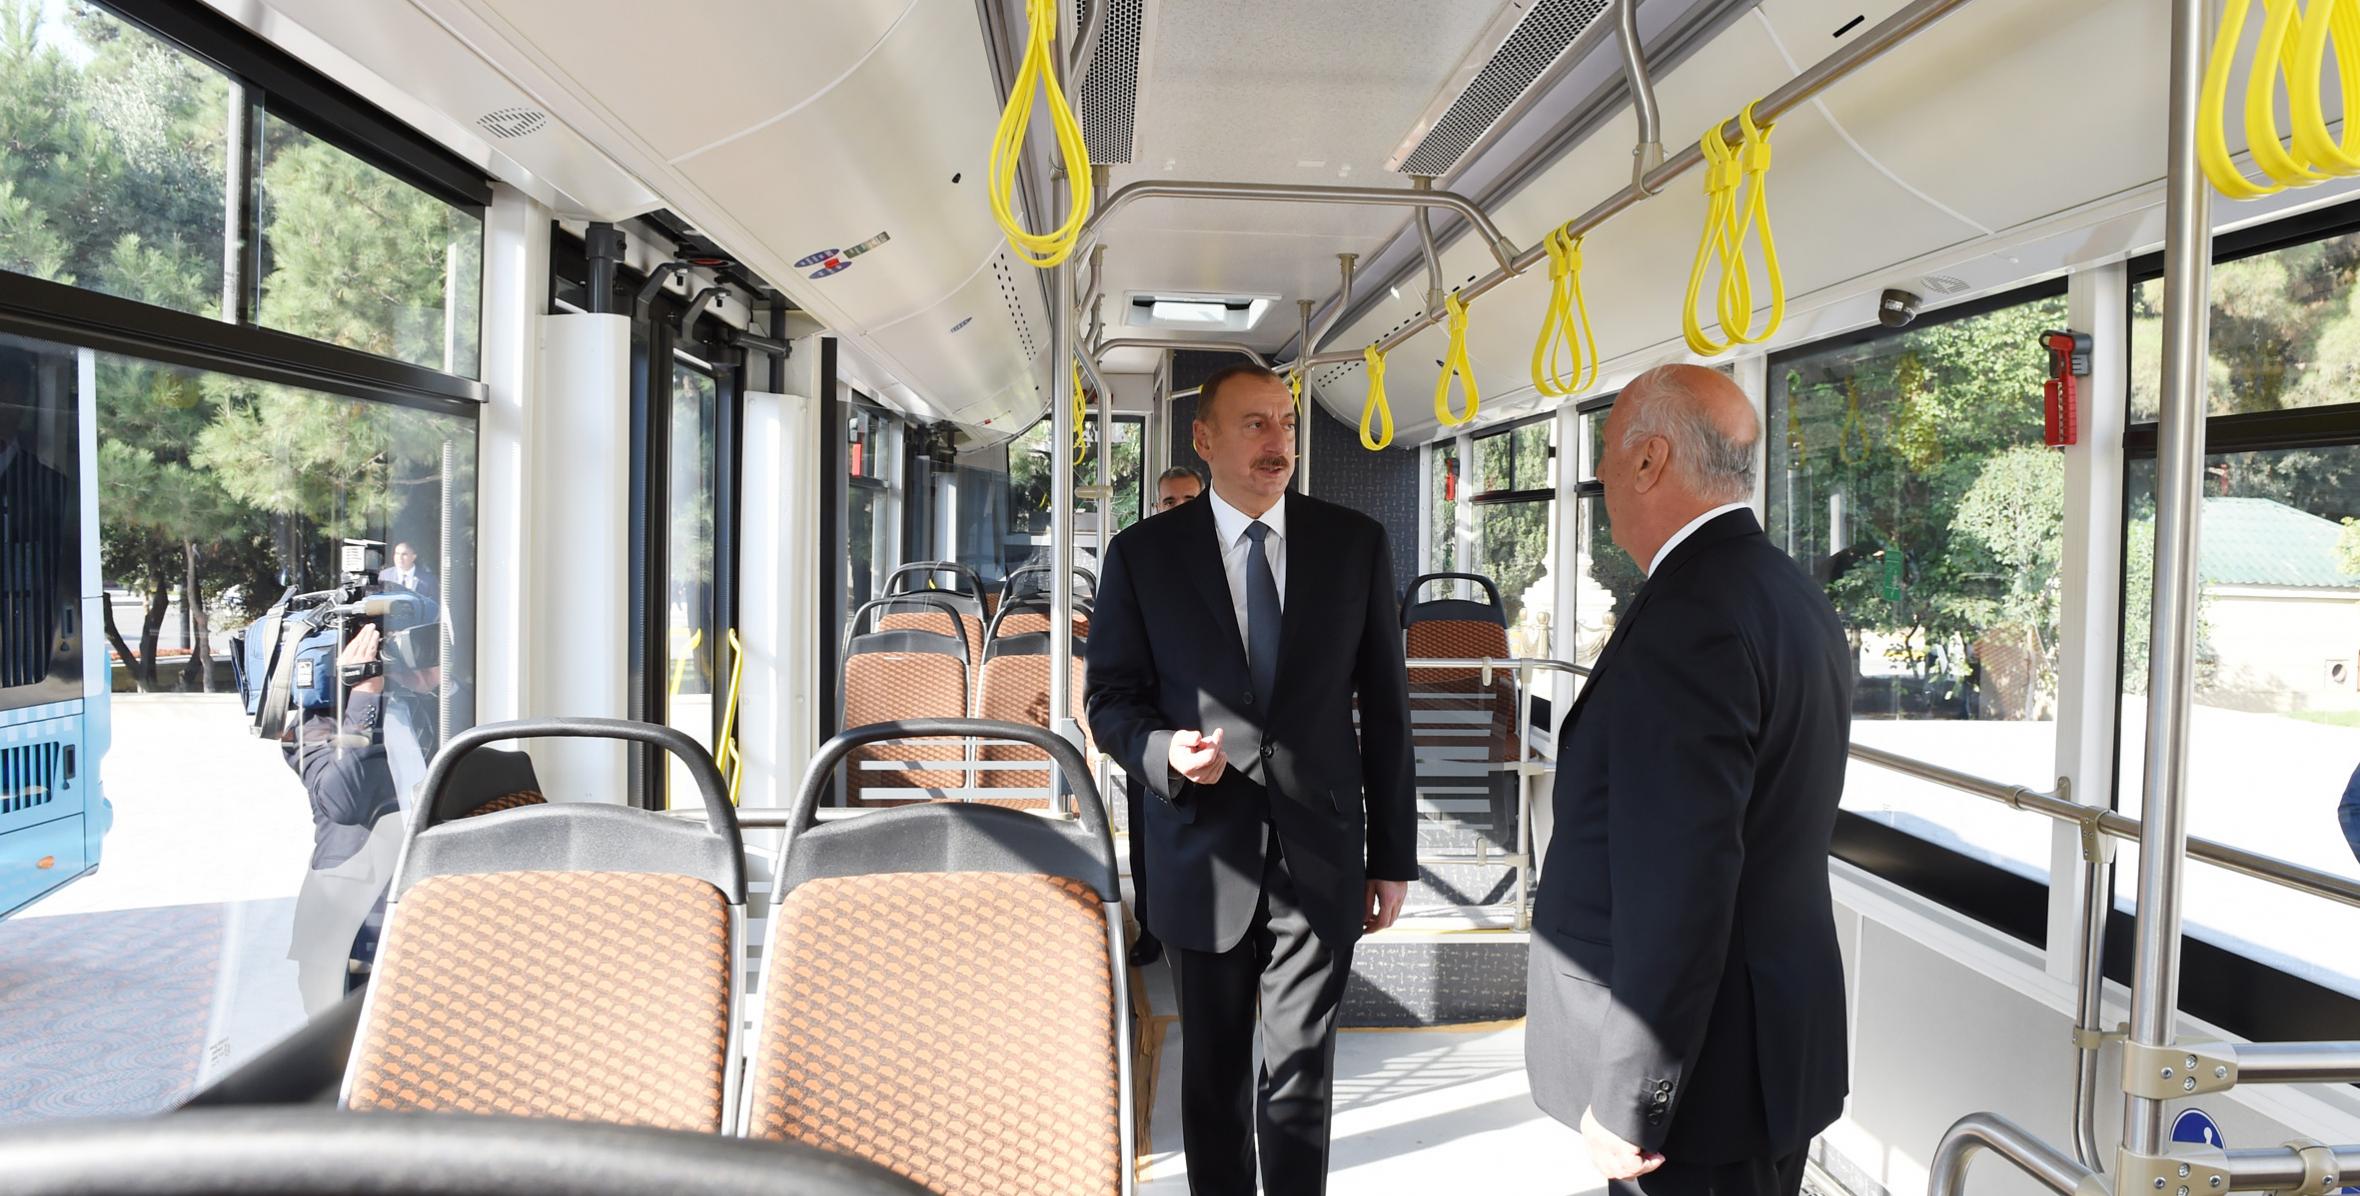 Ильхаму Алиеву были представлены новые пассажирские автобусы, которыми будут пользоваться в городе Сумгайыт